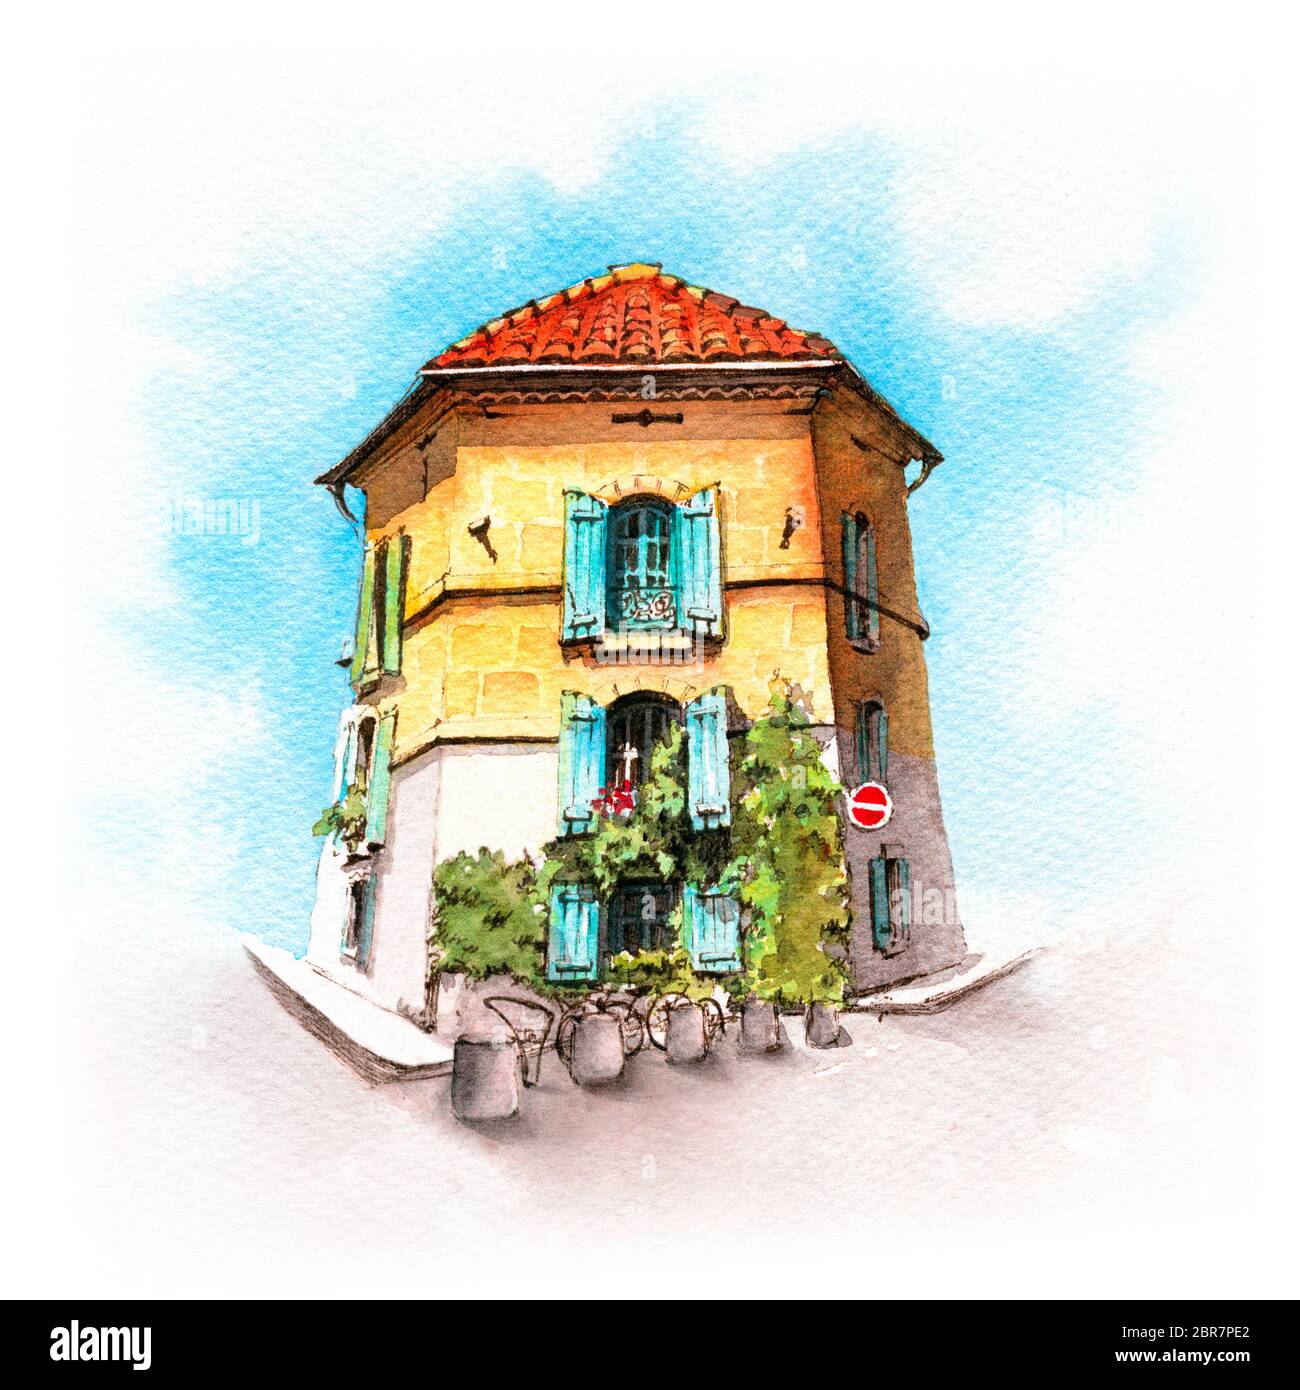 Aquarelle de maison typiquement provençale en journée ensoleillée, Arles, Provence, France Banque D'Images